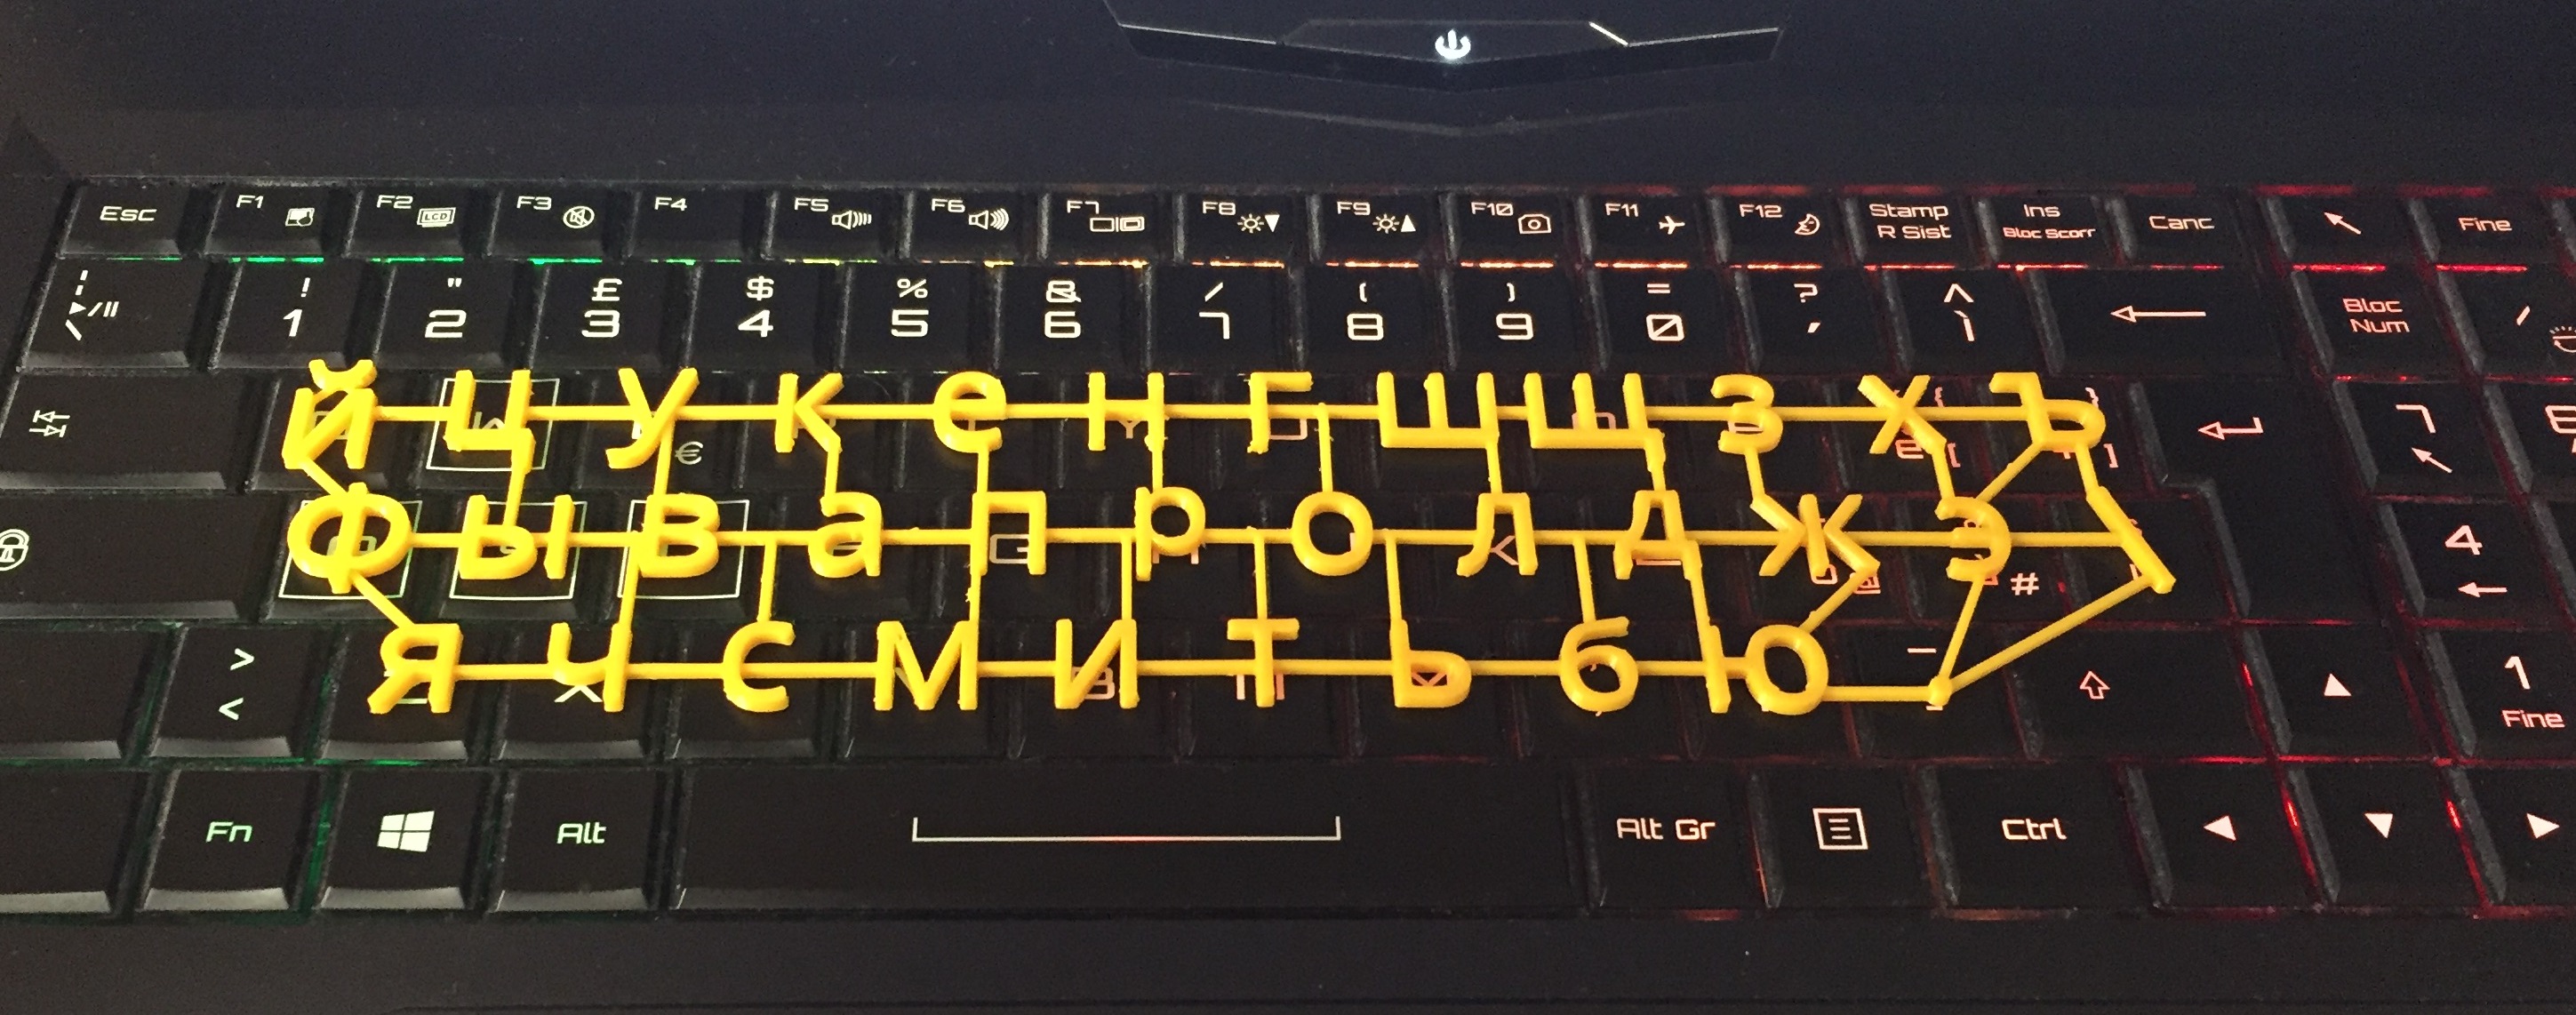 Russian Keyboard "Overlay"